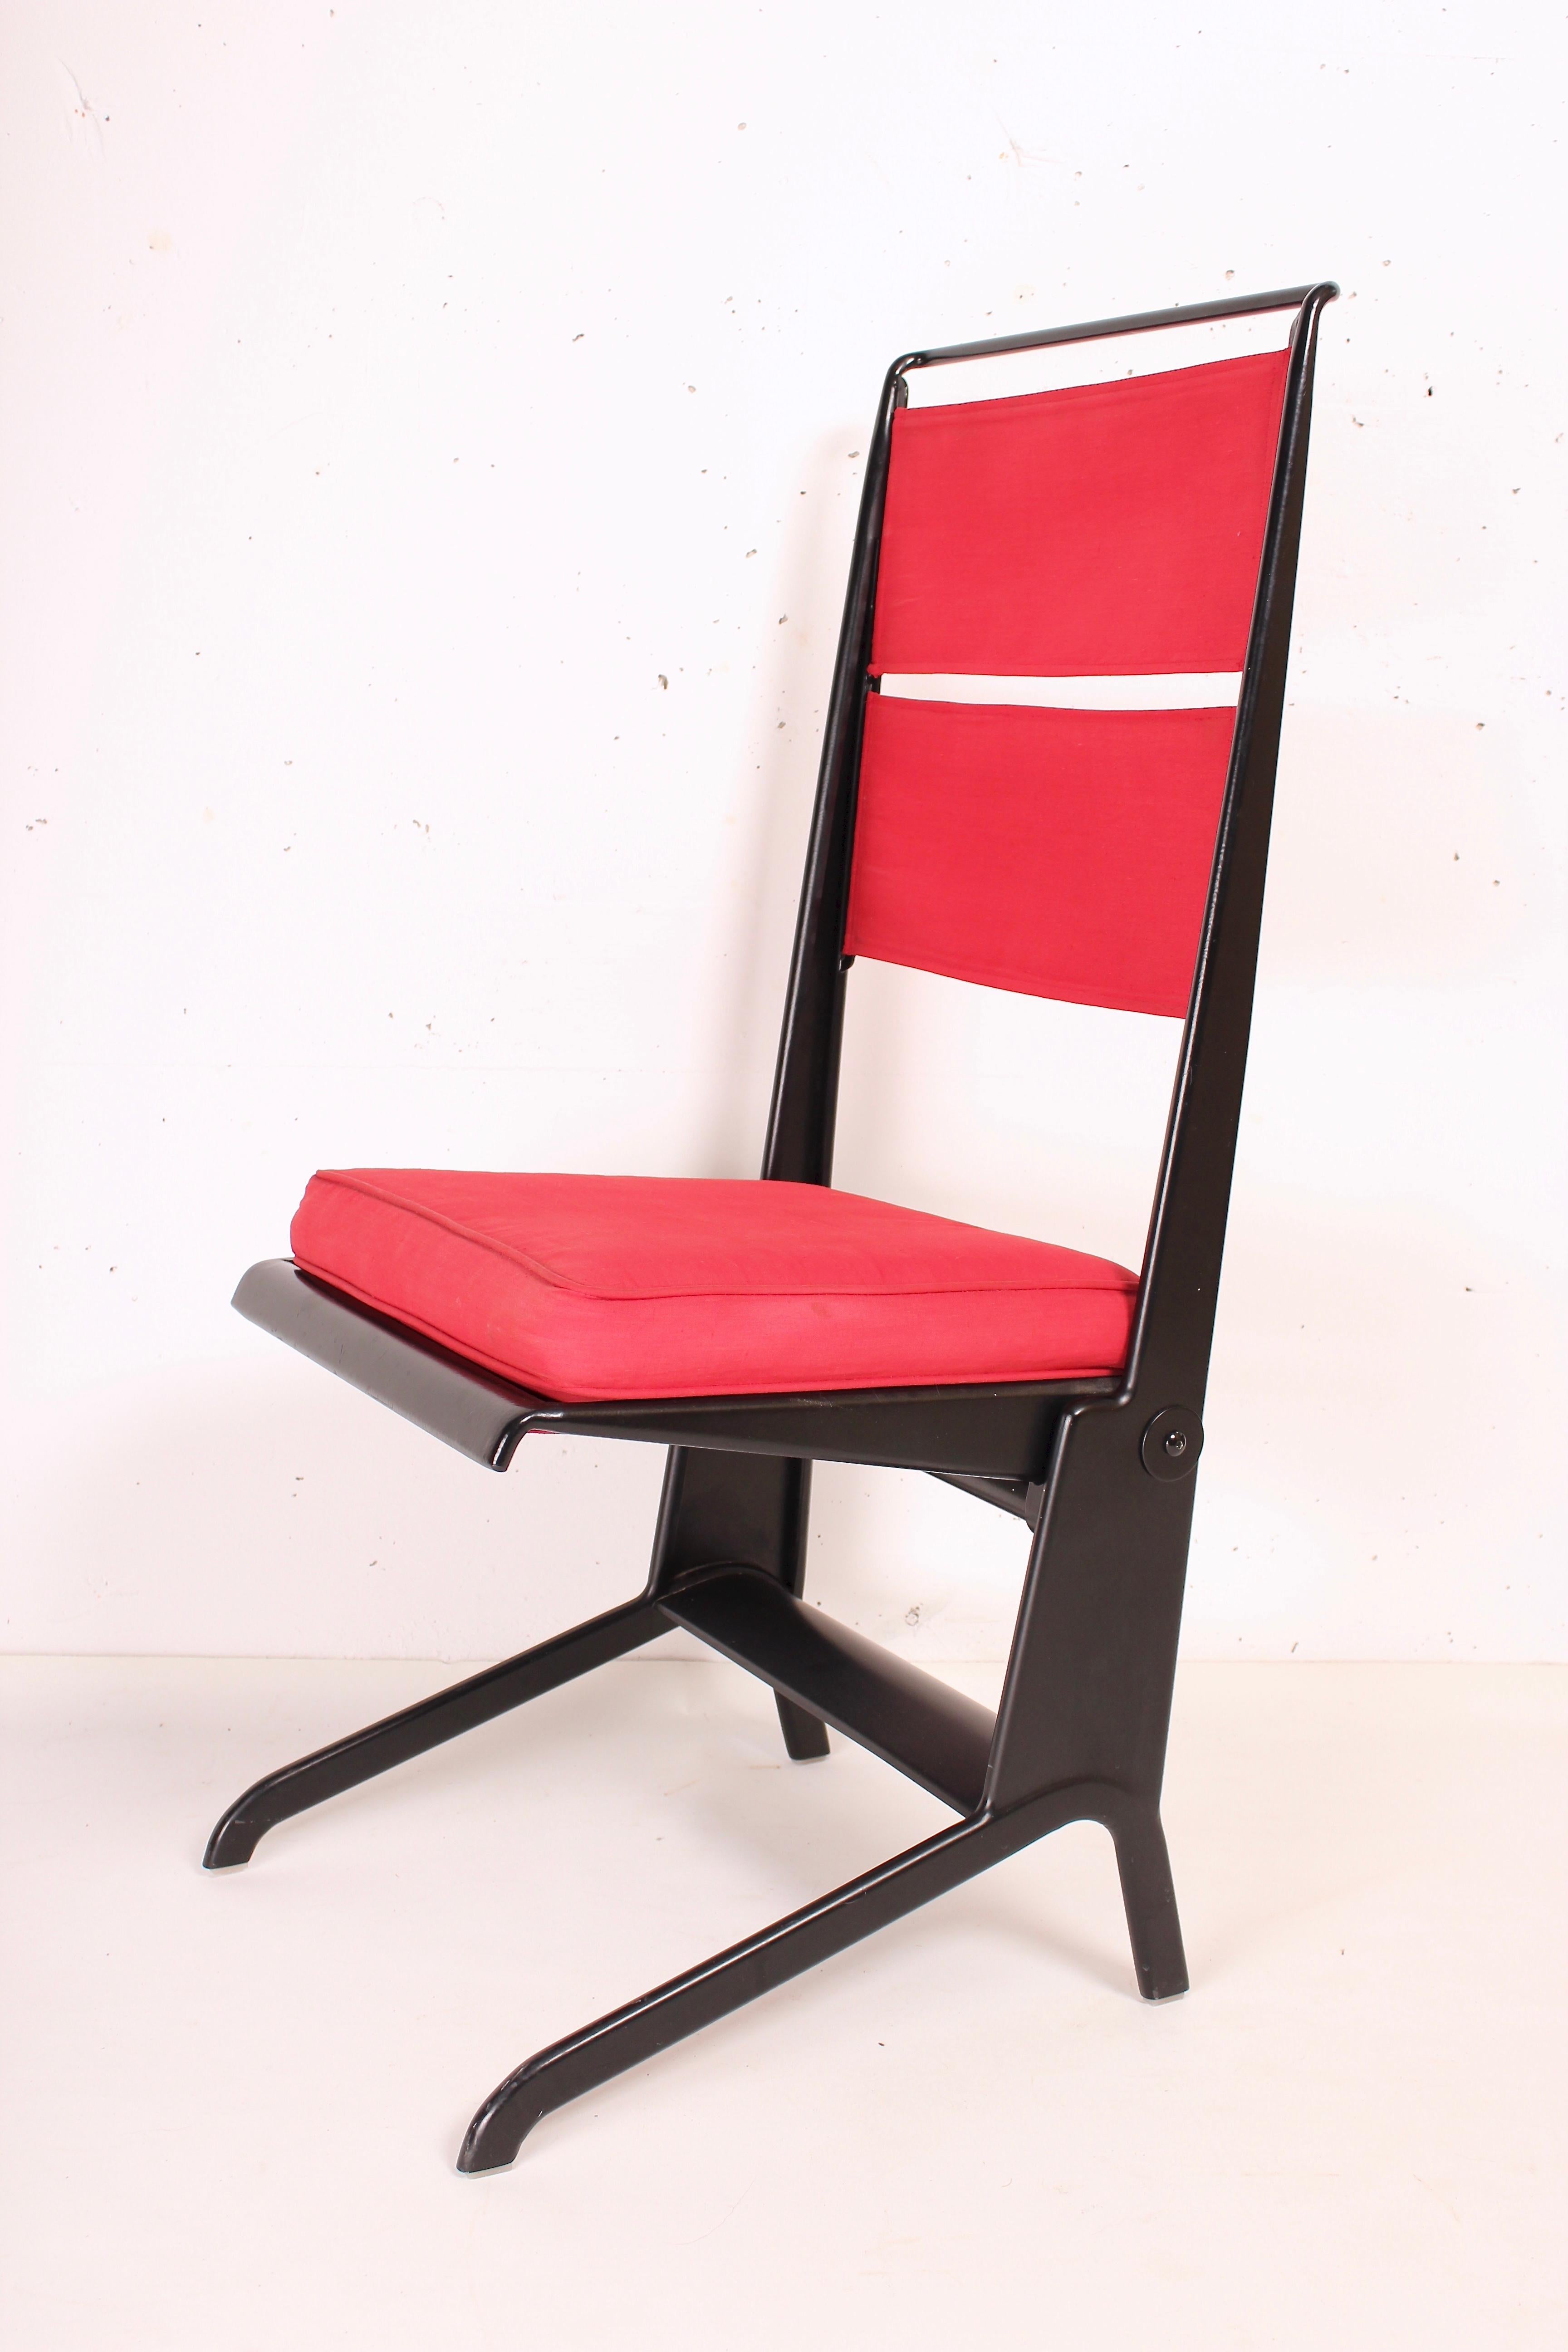 Fin du 20e siècle Chaise pliante Jean Prouvé Design/One 1930, fabriquée par Tecta, 1983 en vente